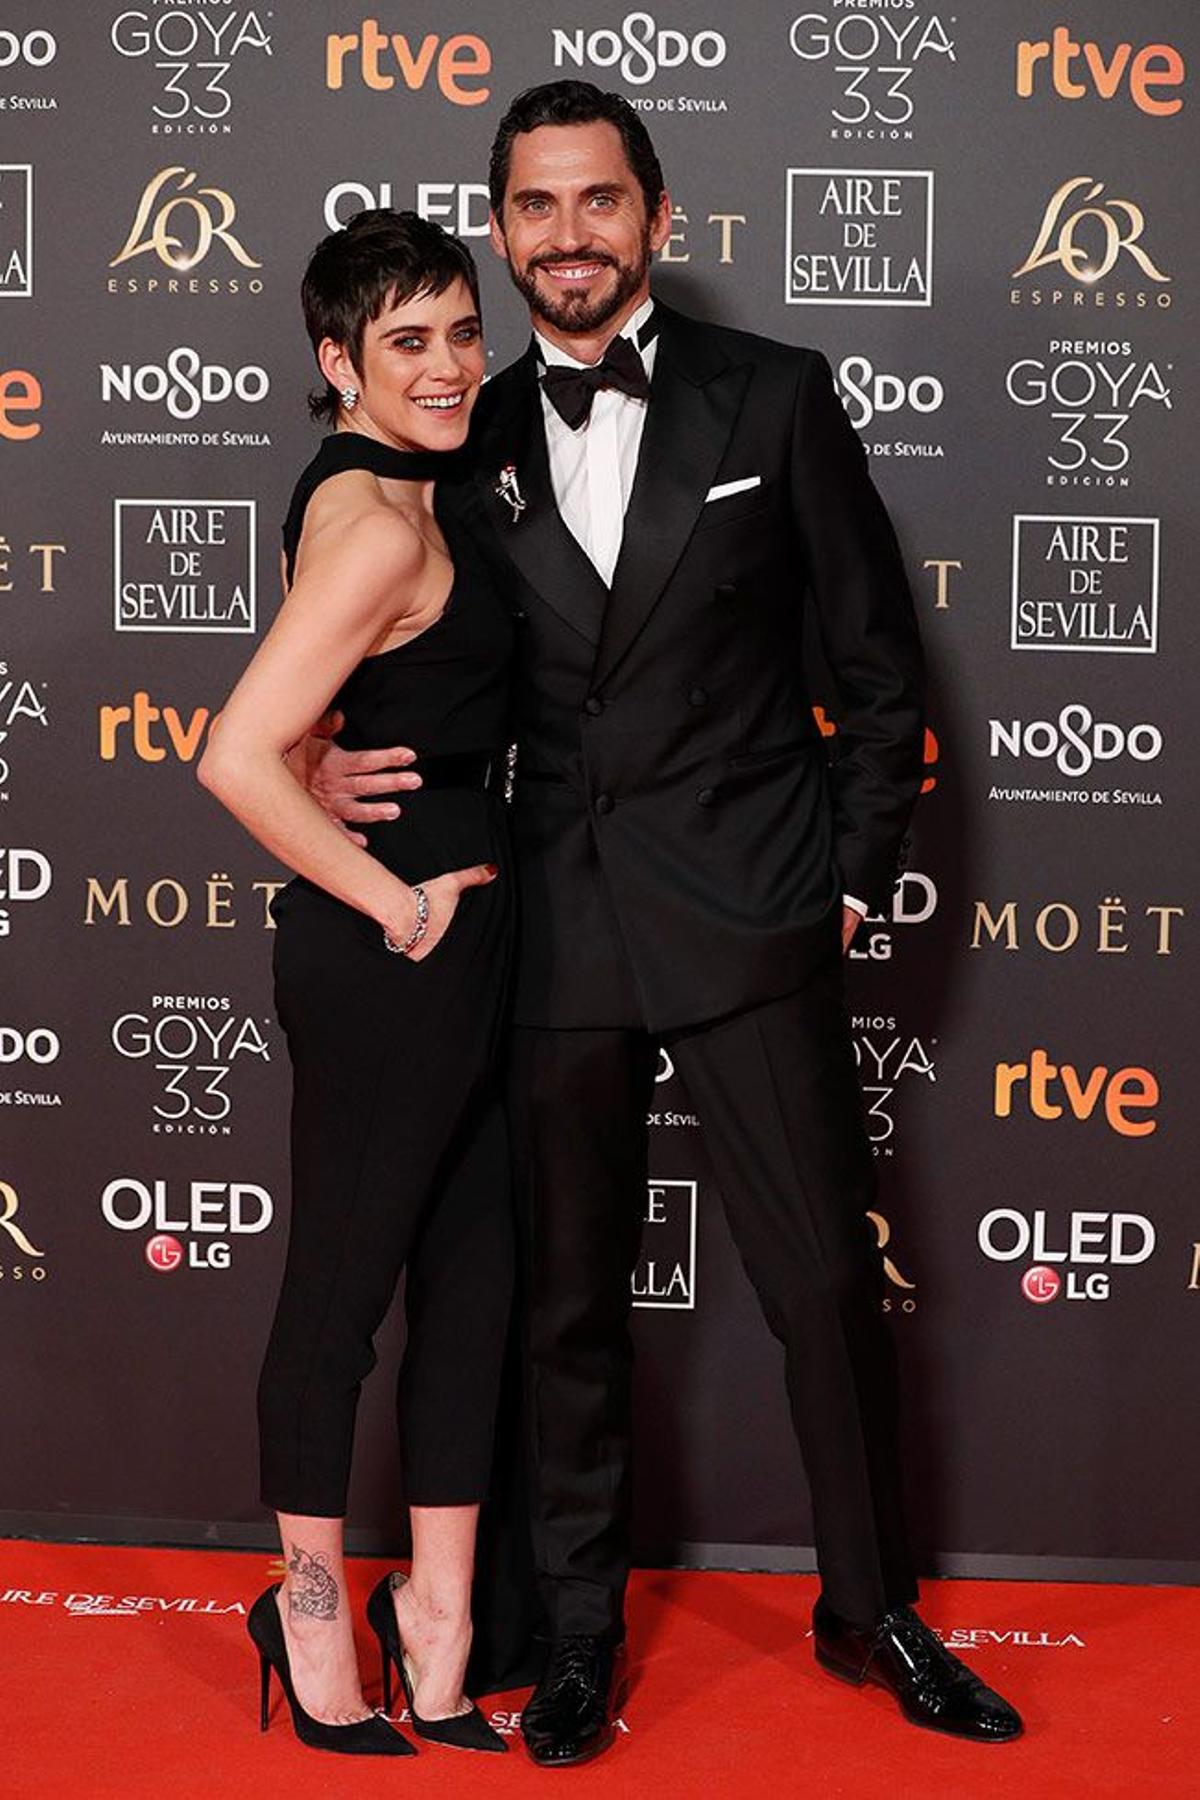 Premios Goya 2019, María León y Paco León